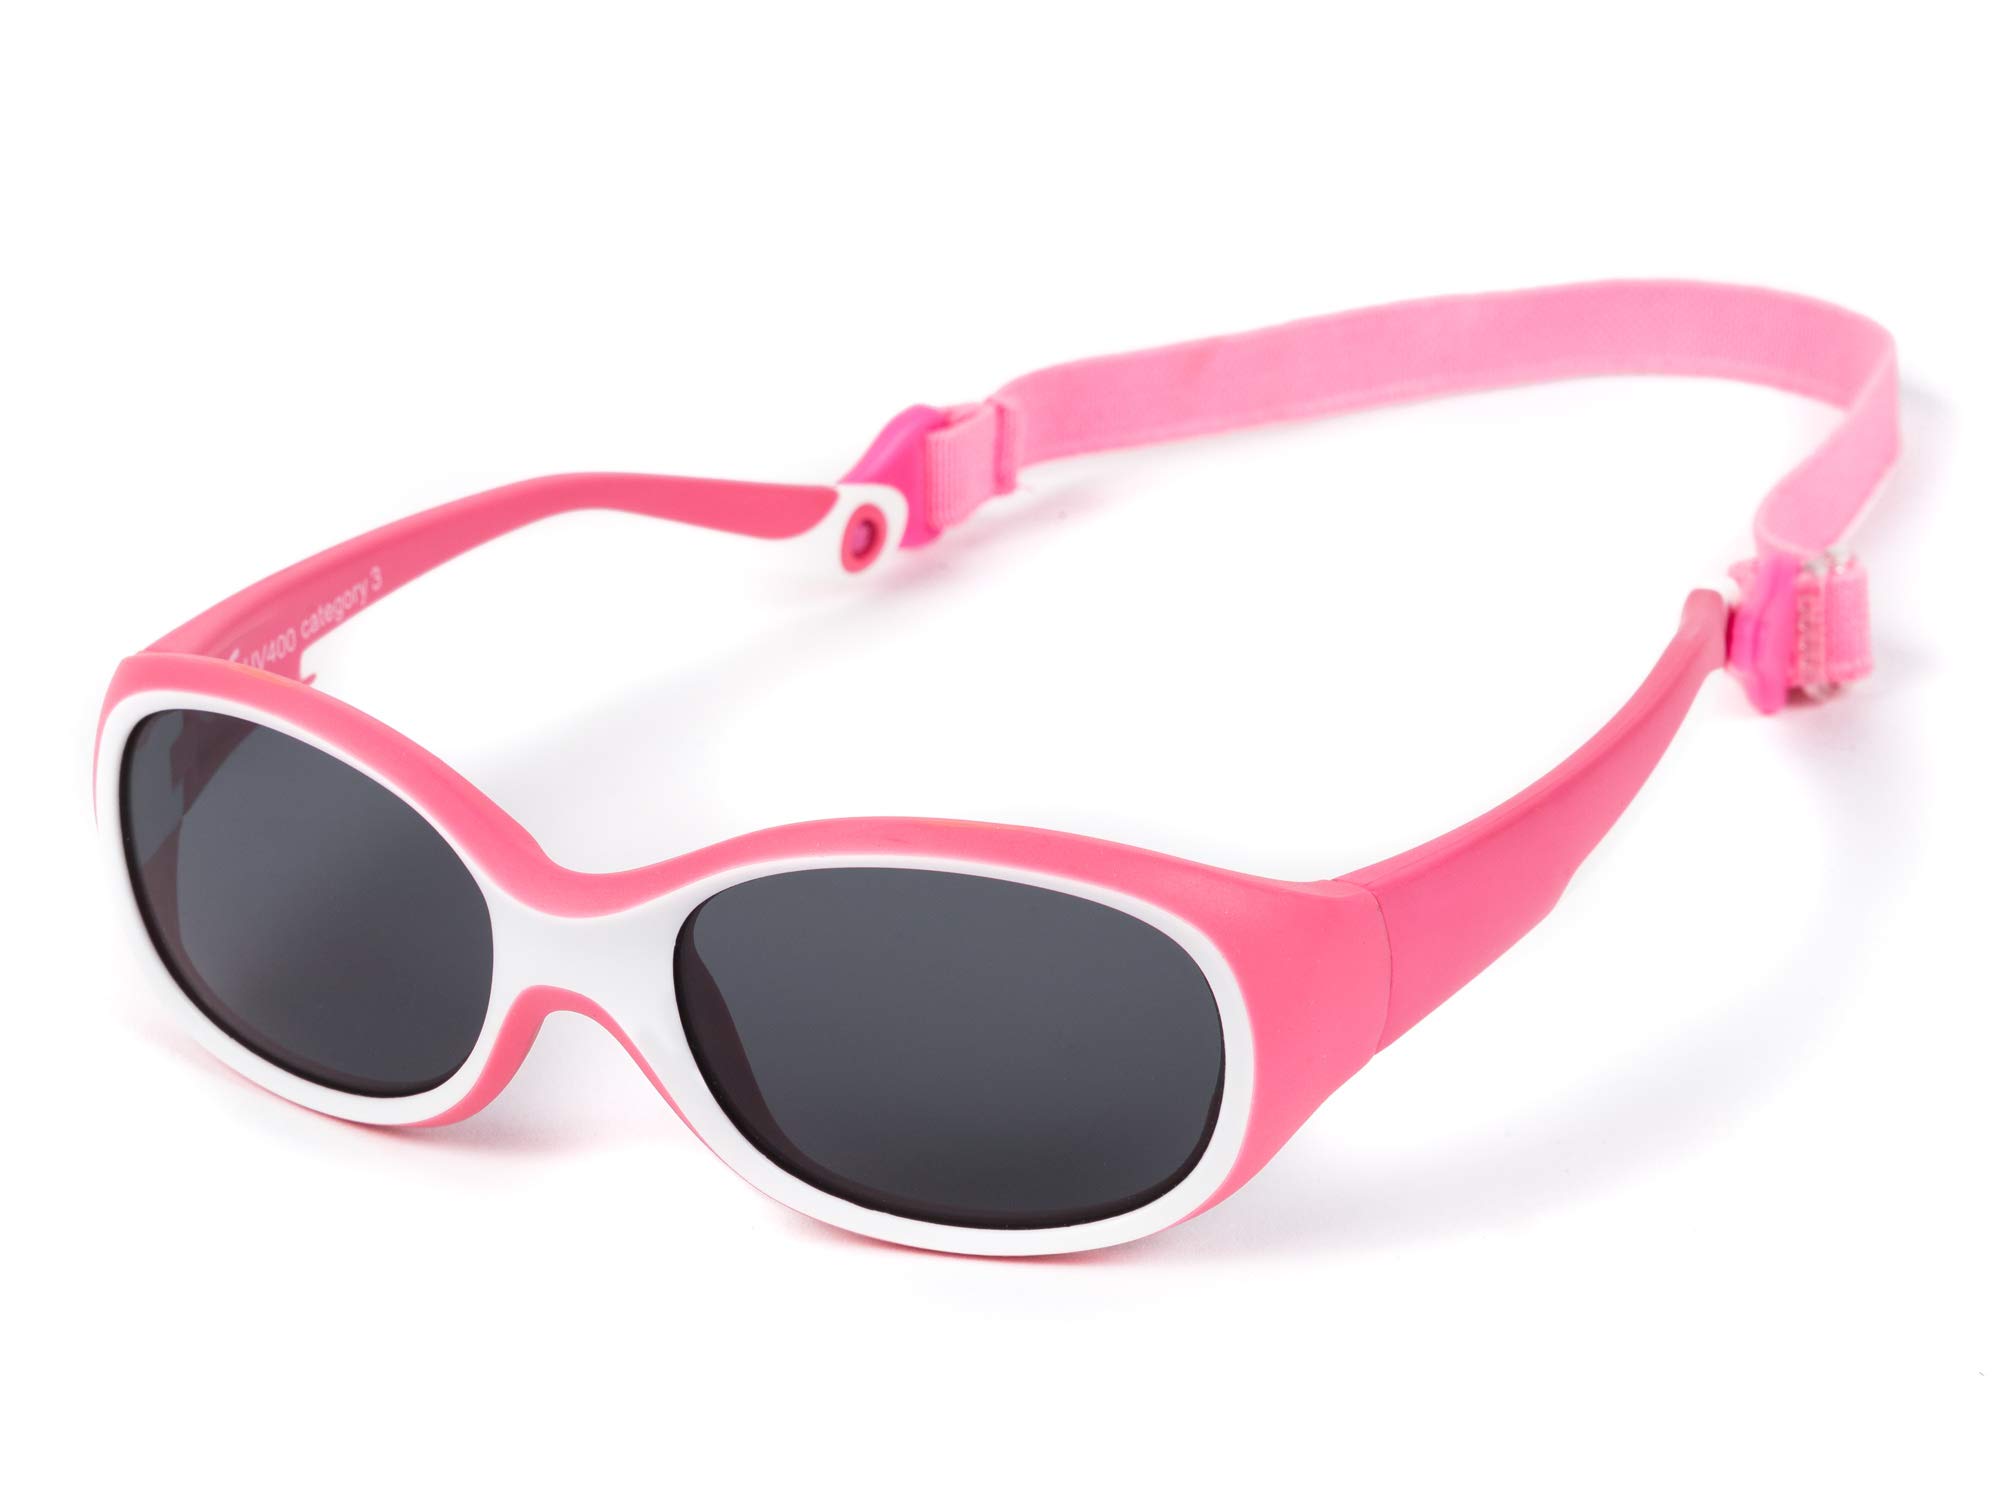 Kiddus Sonnenbrille Ultra Flexible für Kinder Kleinkind Mädchen Jungen. Ab 2 Jahren. Aus Gummi. Unzerbrechlich. Einstellbares und abnehmbares Band. Sicherer UV400 Sonnenfilterschutz.